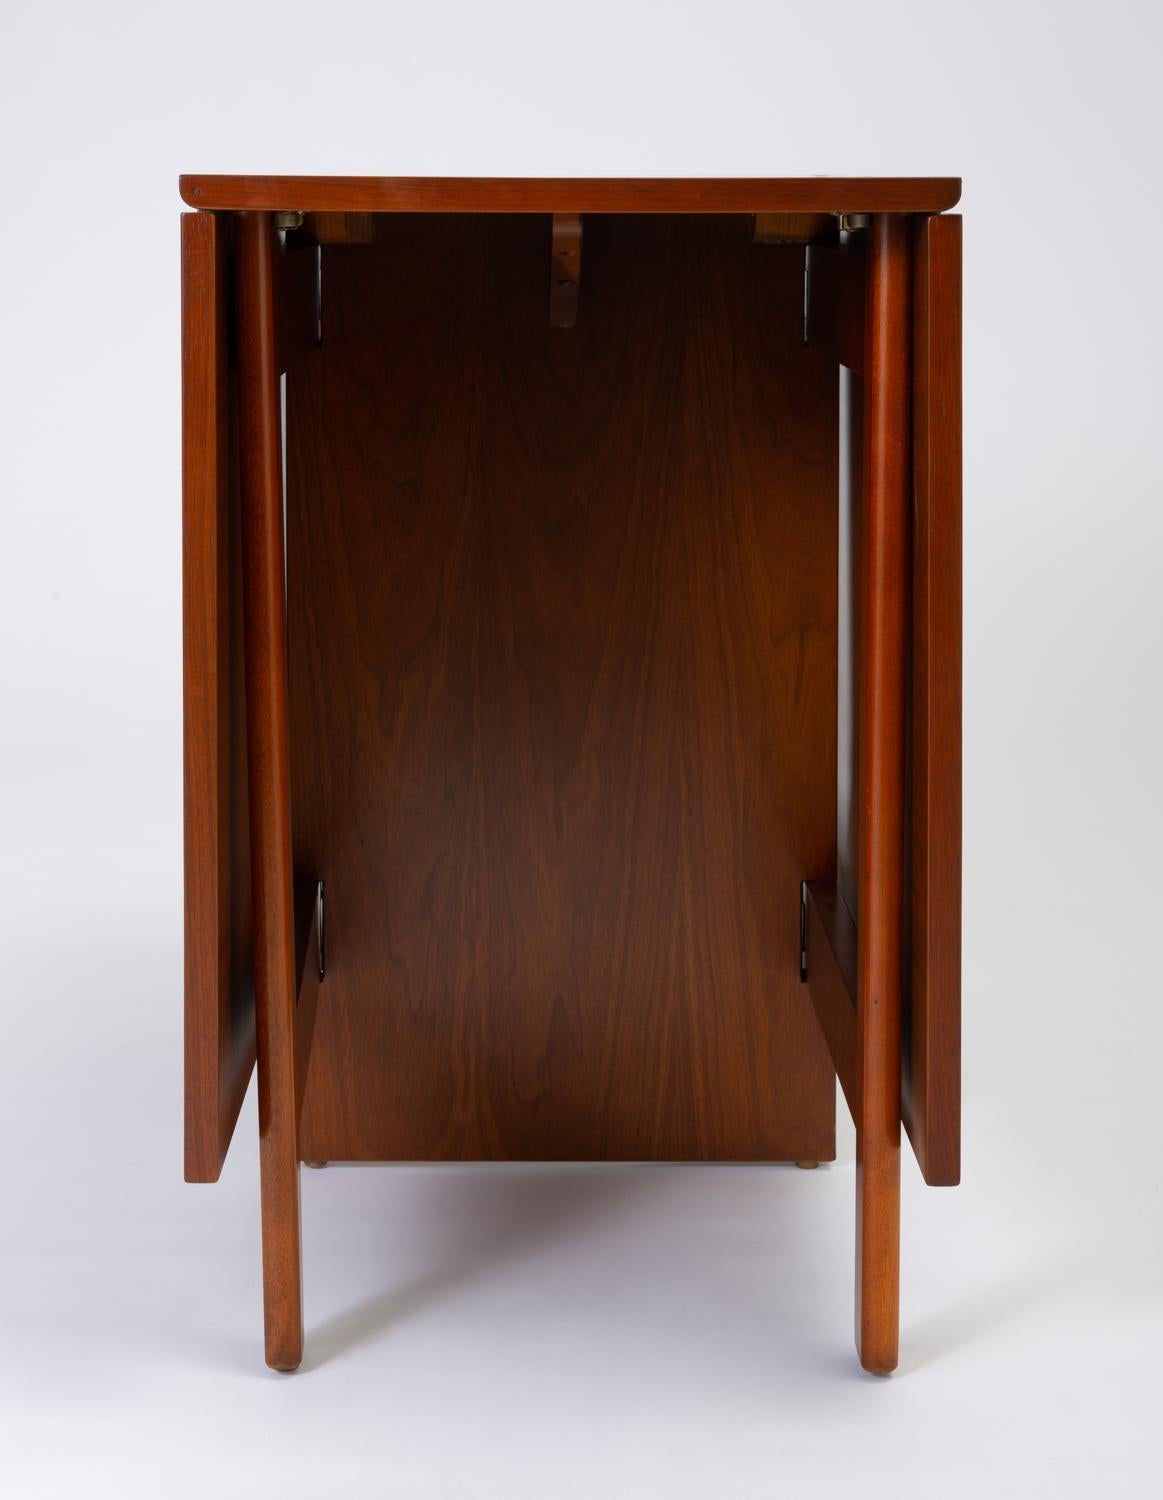 Model 4656 Gateleg Table by George Nelson for Herman Miller 1